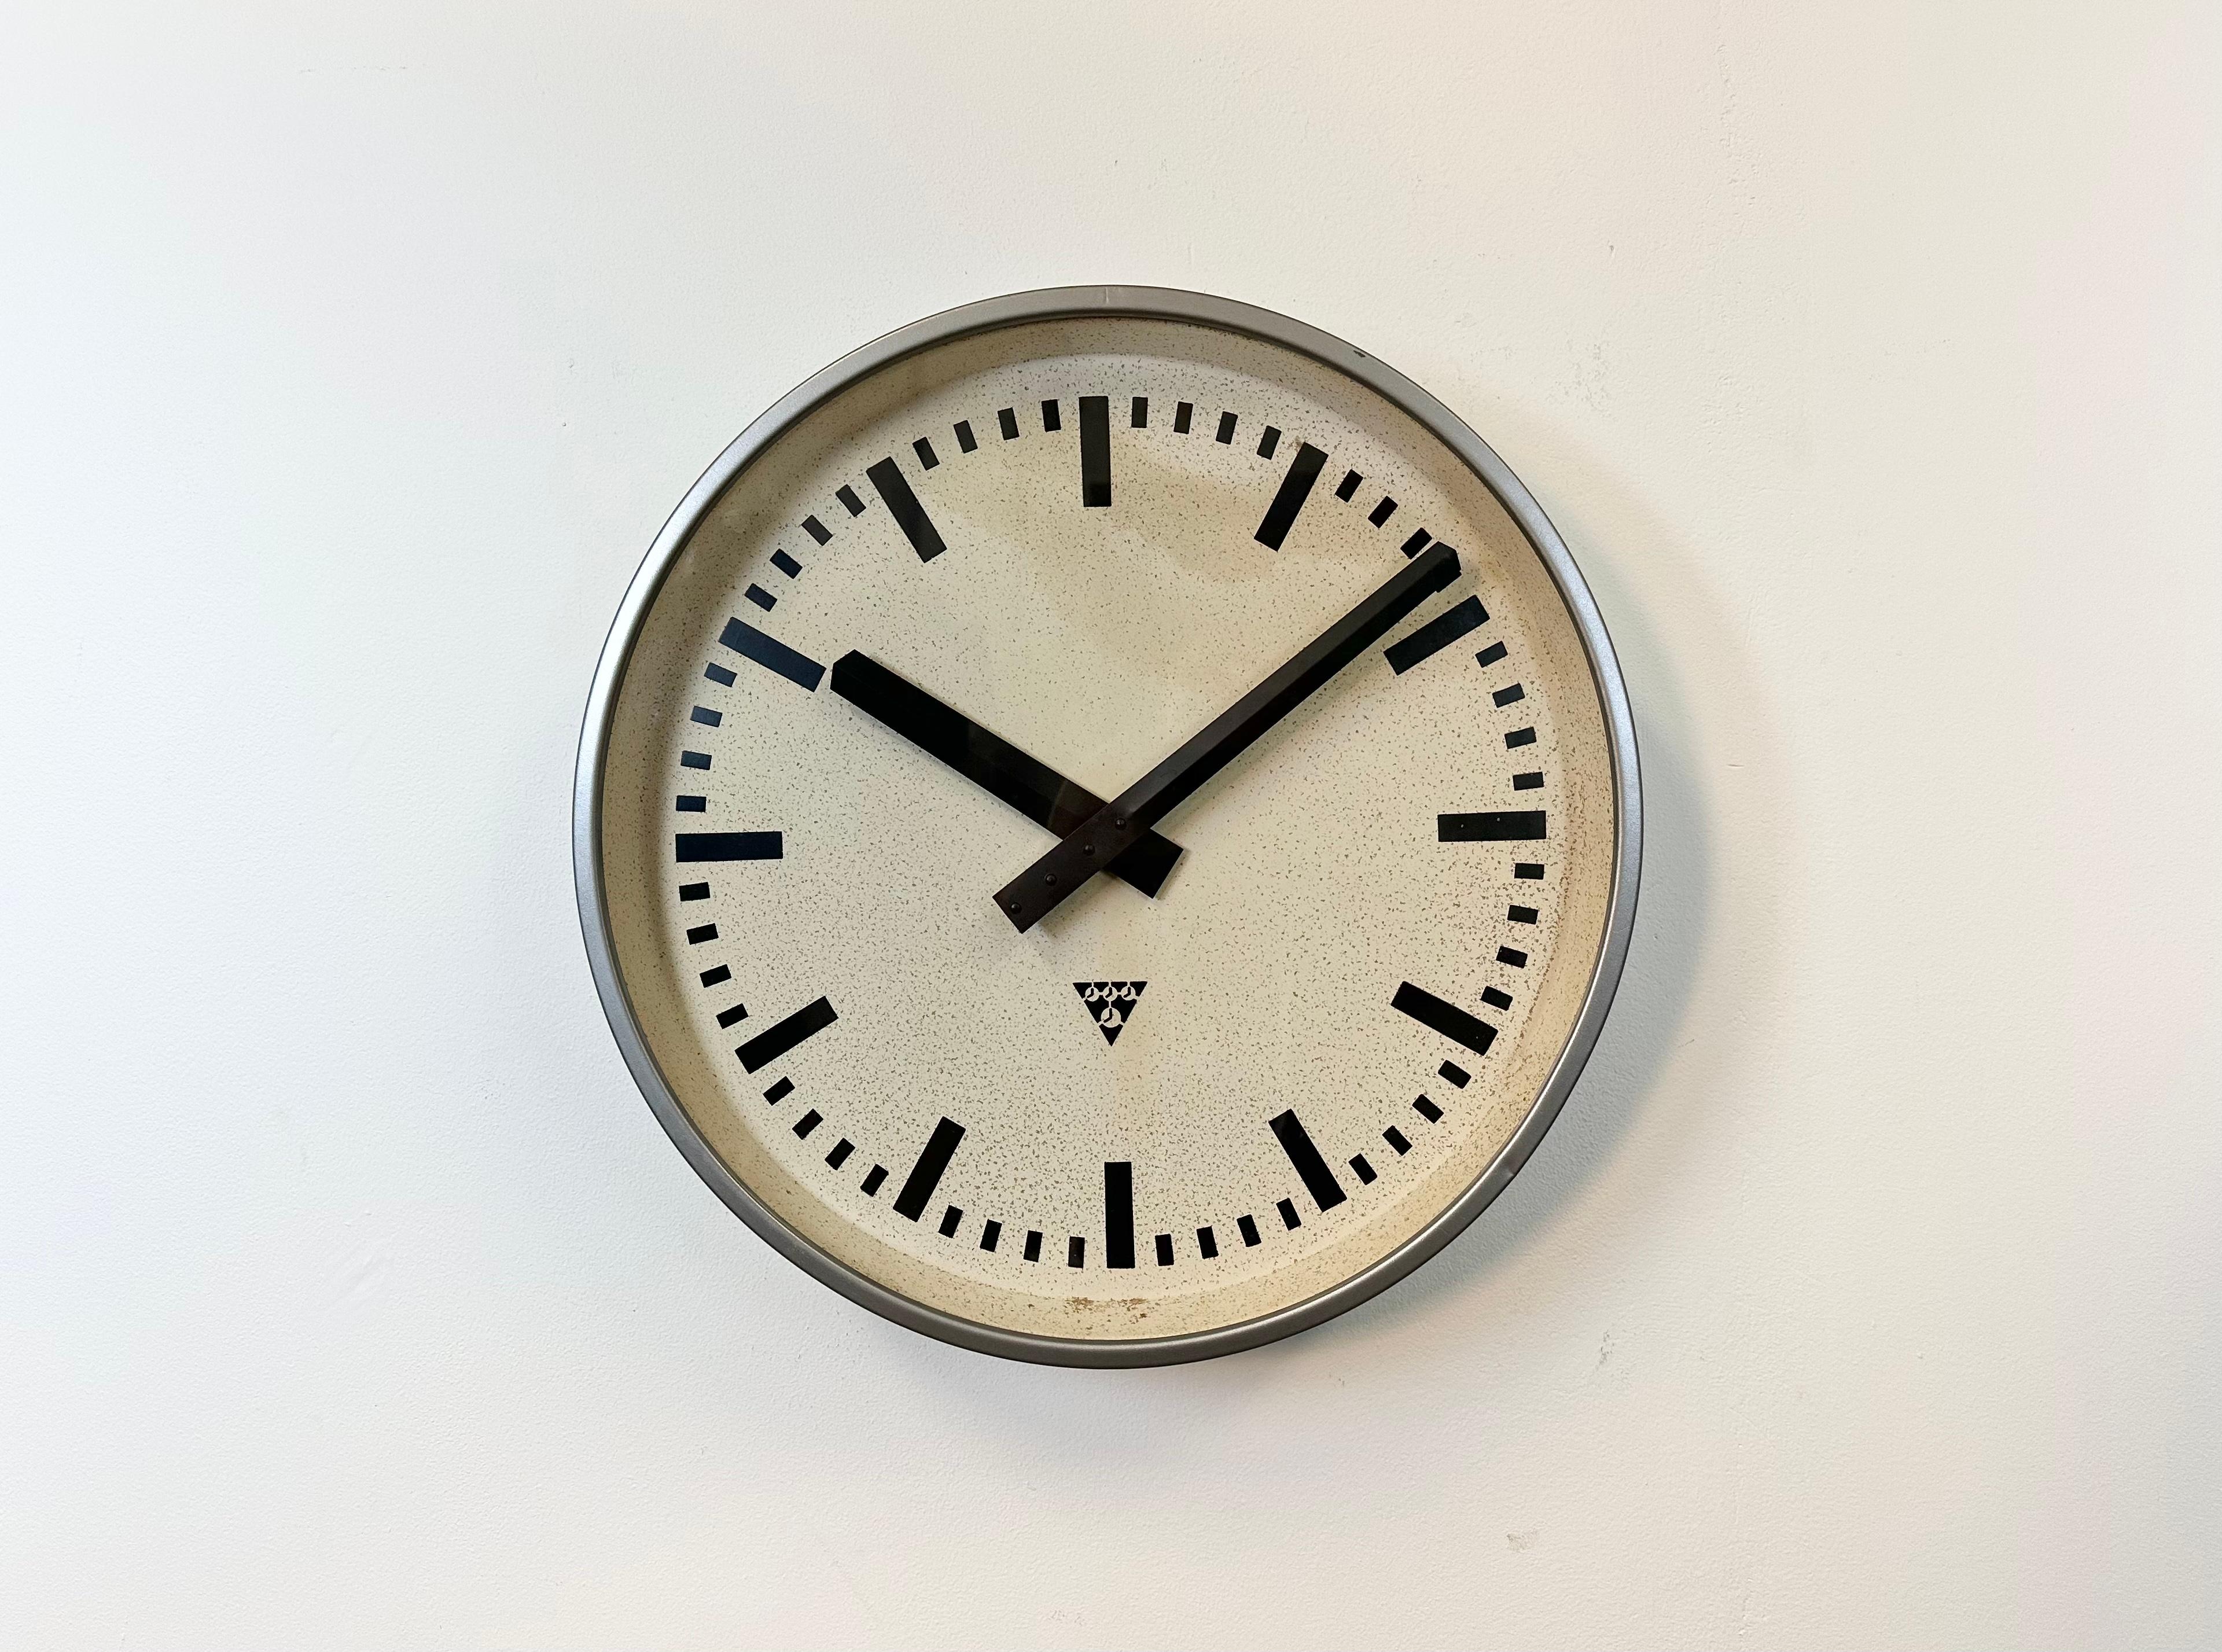 Horloge murale Pragotron fabriquée dans l'ancienne Tchécoslovaquie dans les années 1960. Il se compose d'un cadre métallique gris, d'un cadran métallique et d'un couvercle en verre transparent. La pièce a été convertie en un mécanisme d'horlogerie